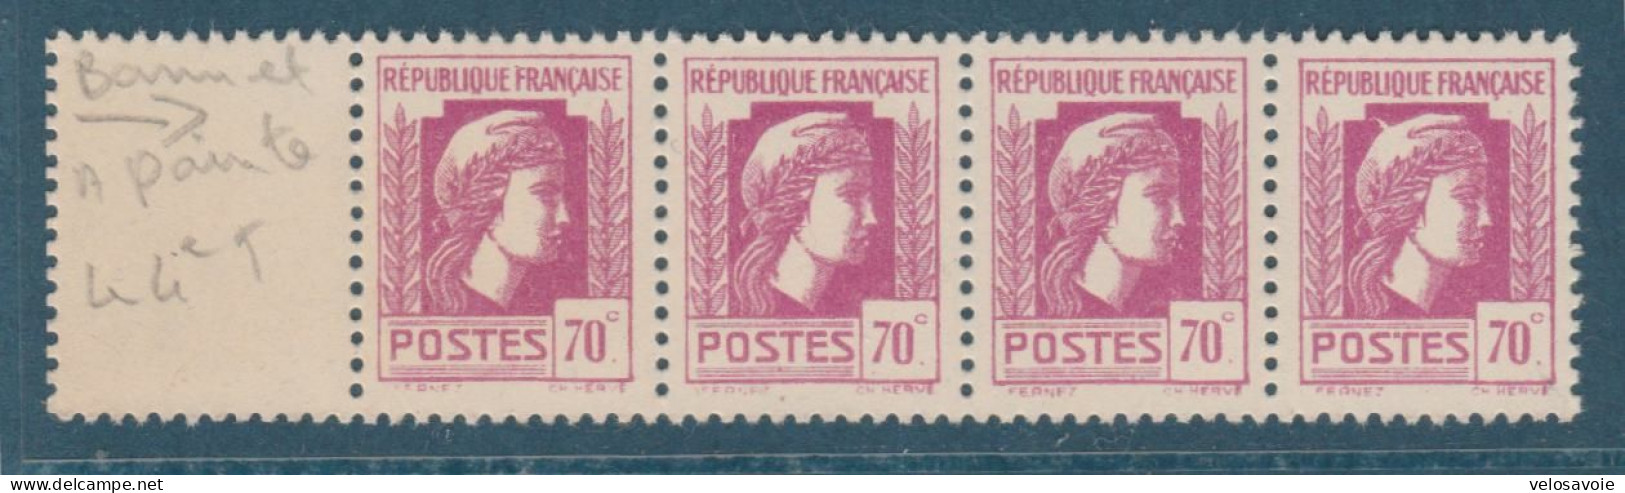 N° 635a BONNET A POINTE DANS BANDE 4 ** - Unused Stamps